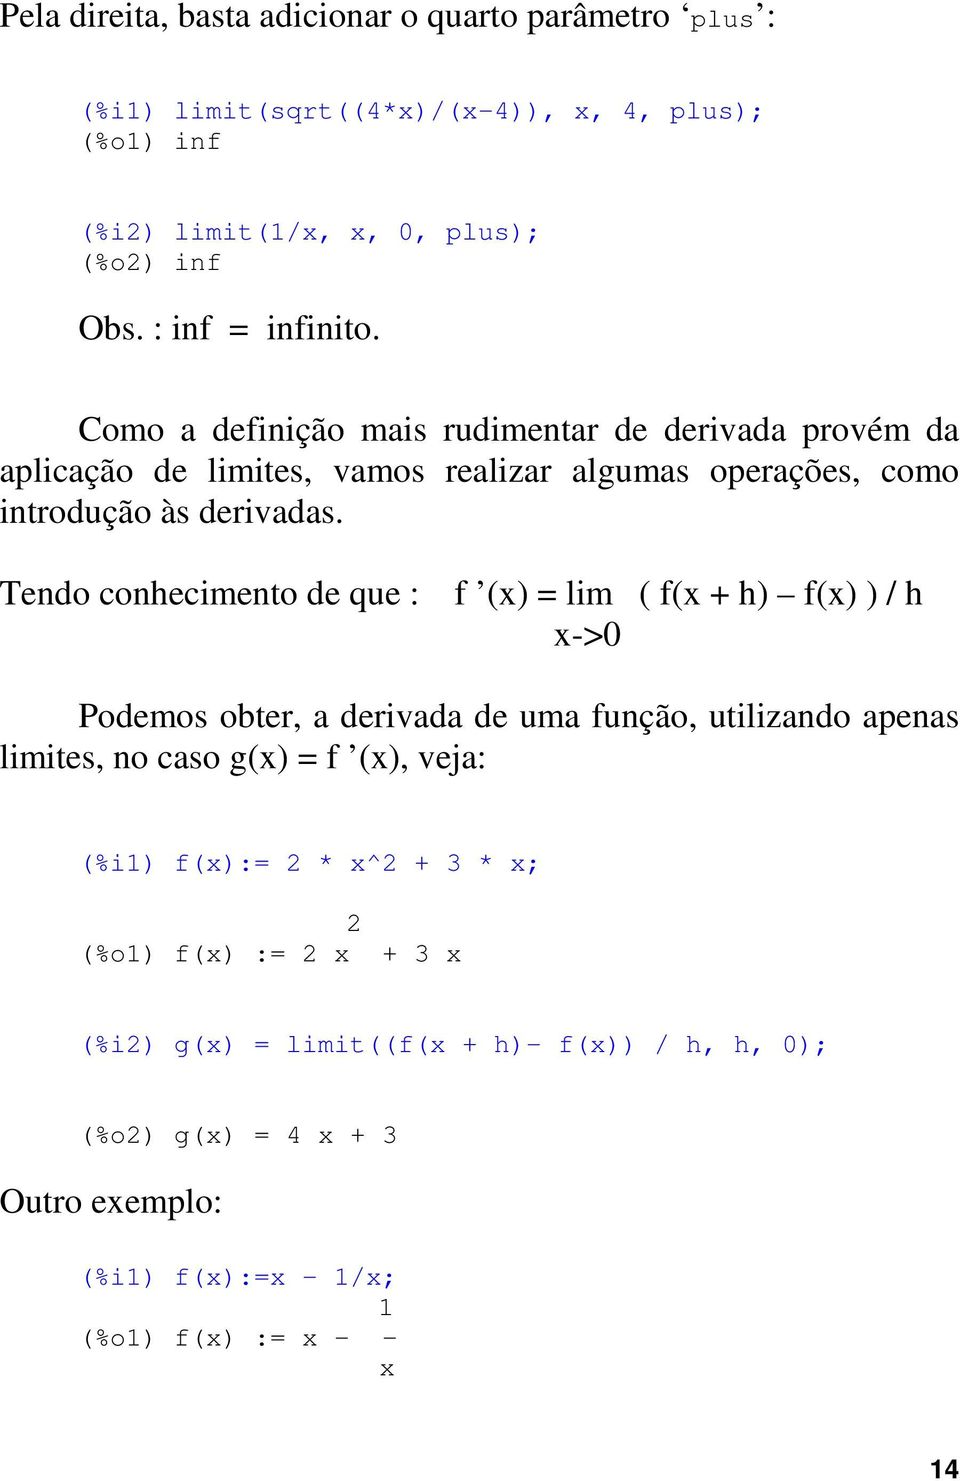 Tendo conhecimento de que : f (x) = lim ( f(x + h) f(x) ) / h x->0 Podemos obter, a derivada de uma função, utilizando apenas limites, no caso g(x) = f (x), veja: